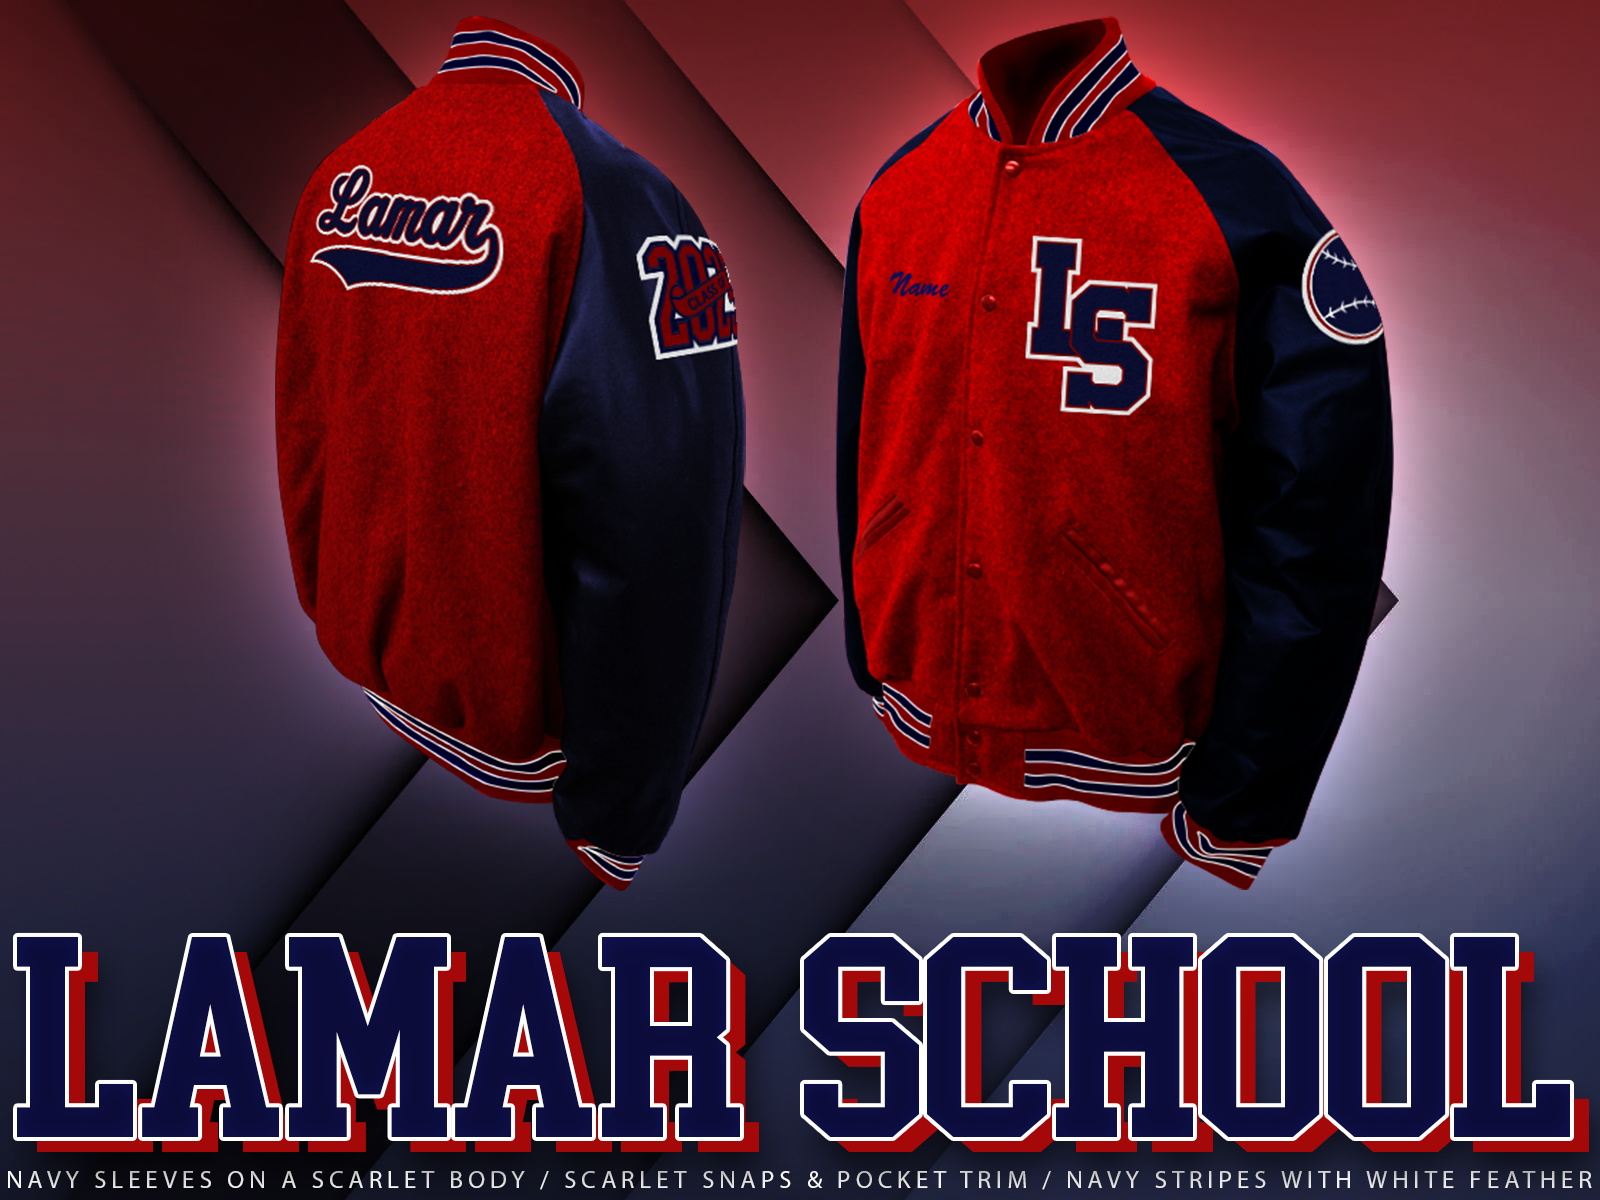 Lamar Middle High School -THE LAMAR SCHOOL